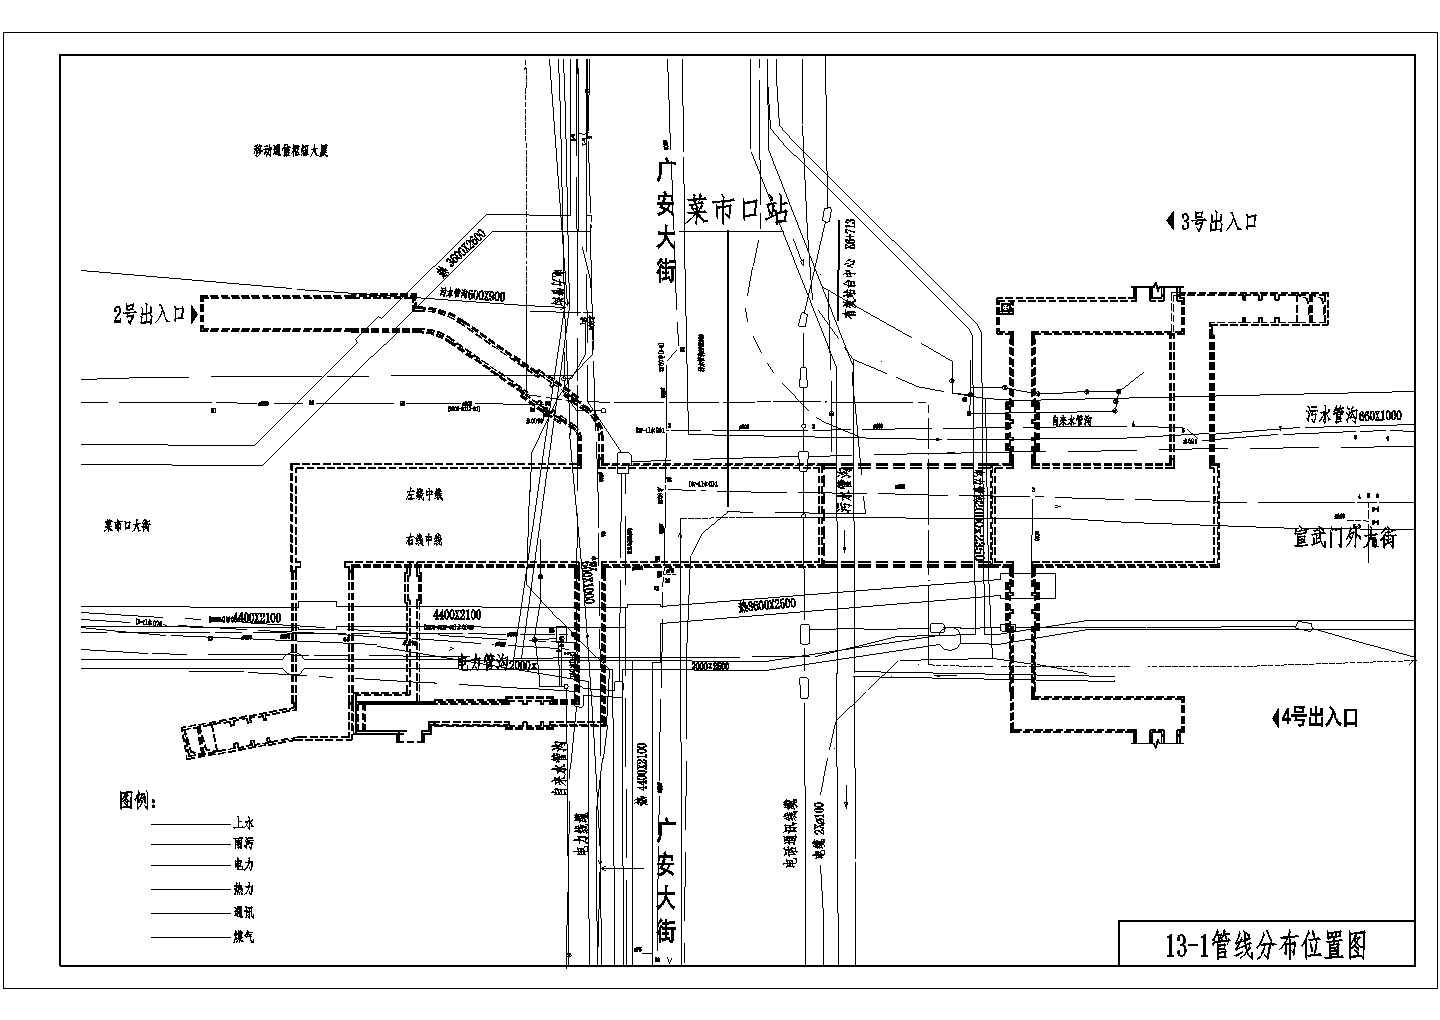 北京地铁某车站实施性施工组织设计